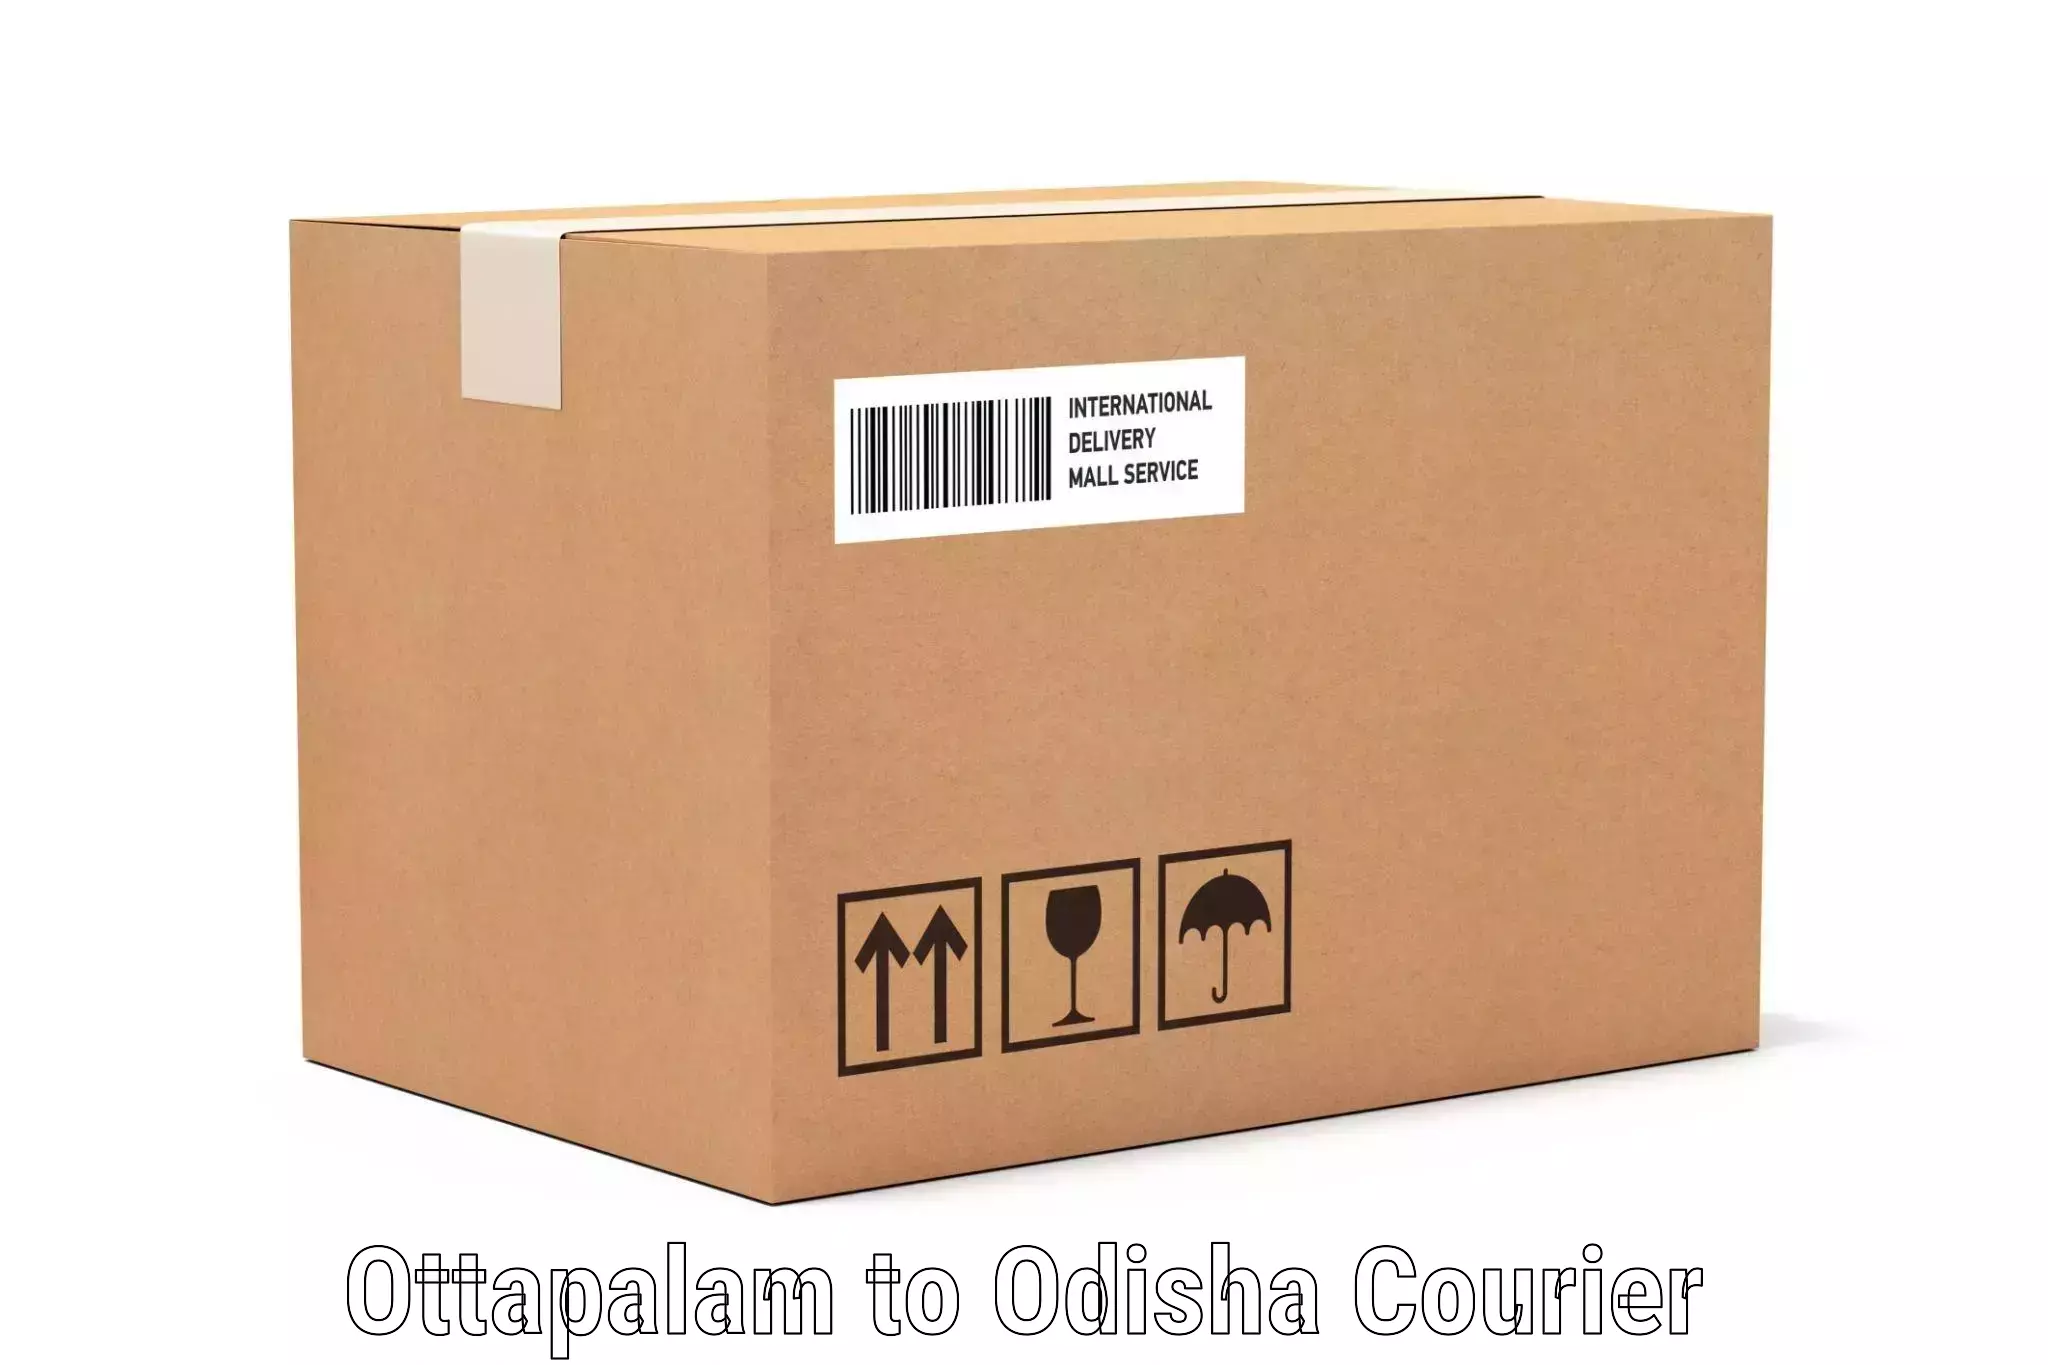 Luggage shipping strategy Ottapalam to Odisha